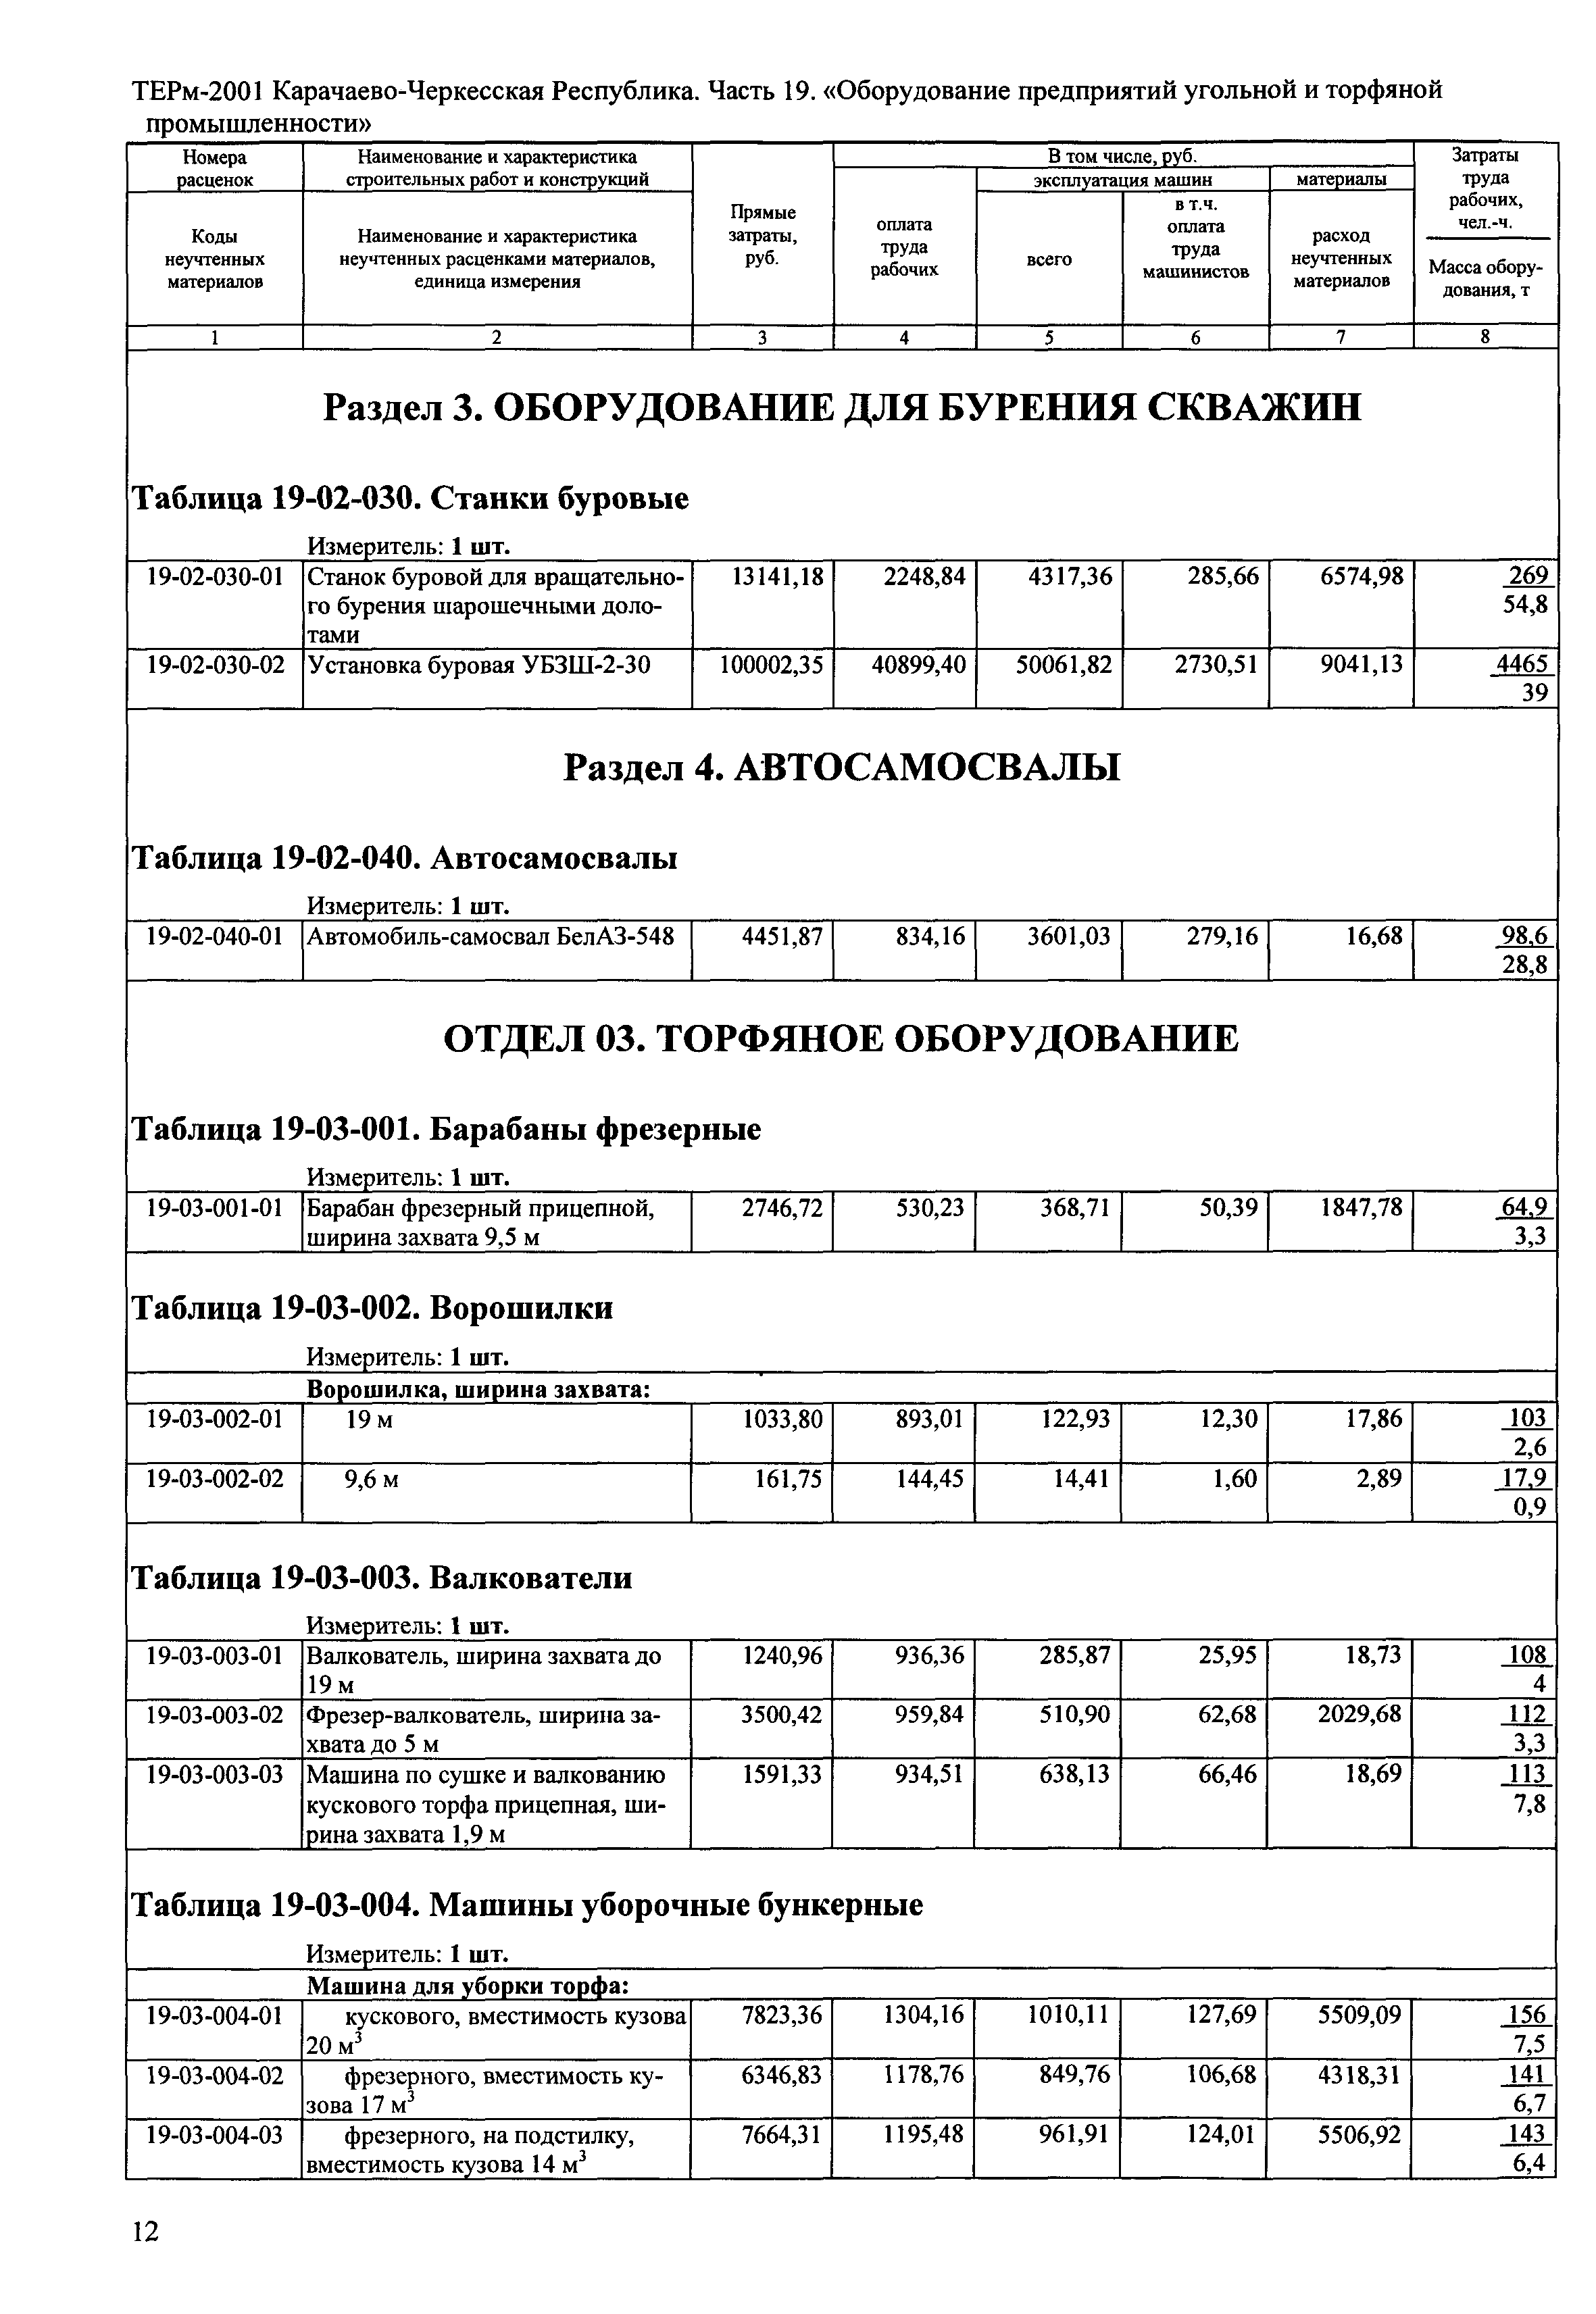 ТЕРм Карачаево-Черкесская Республика 19-2001